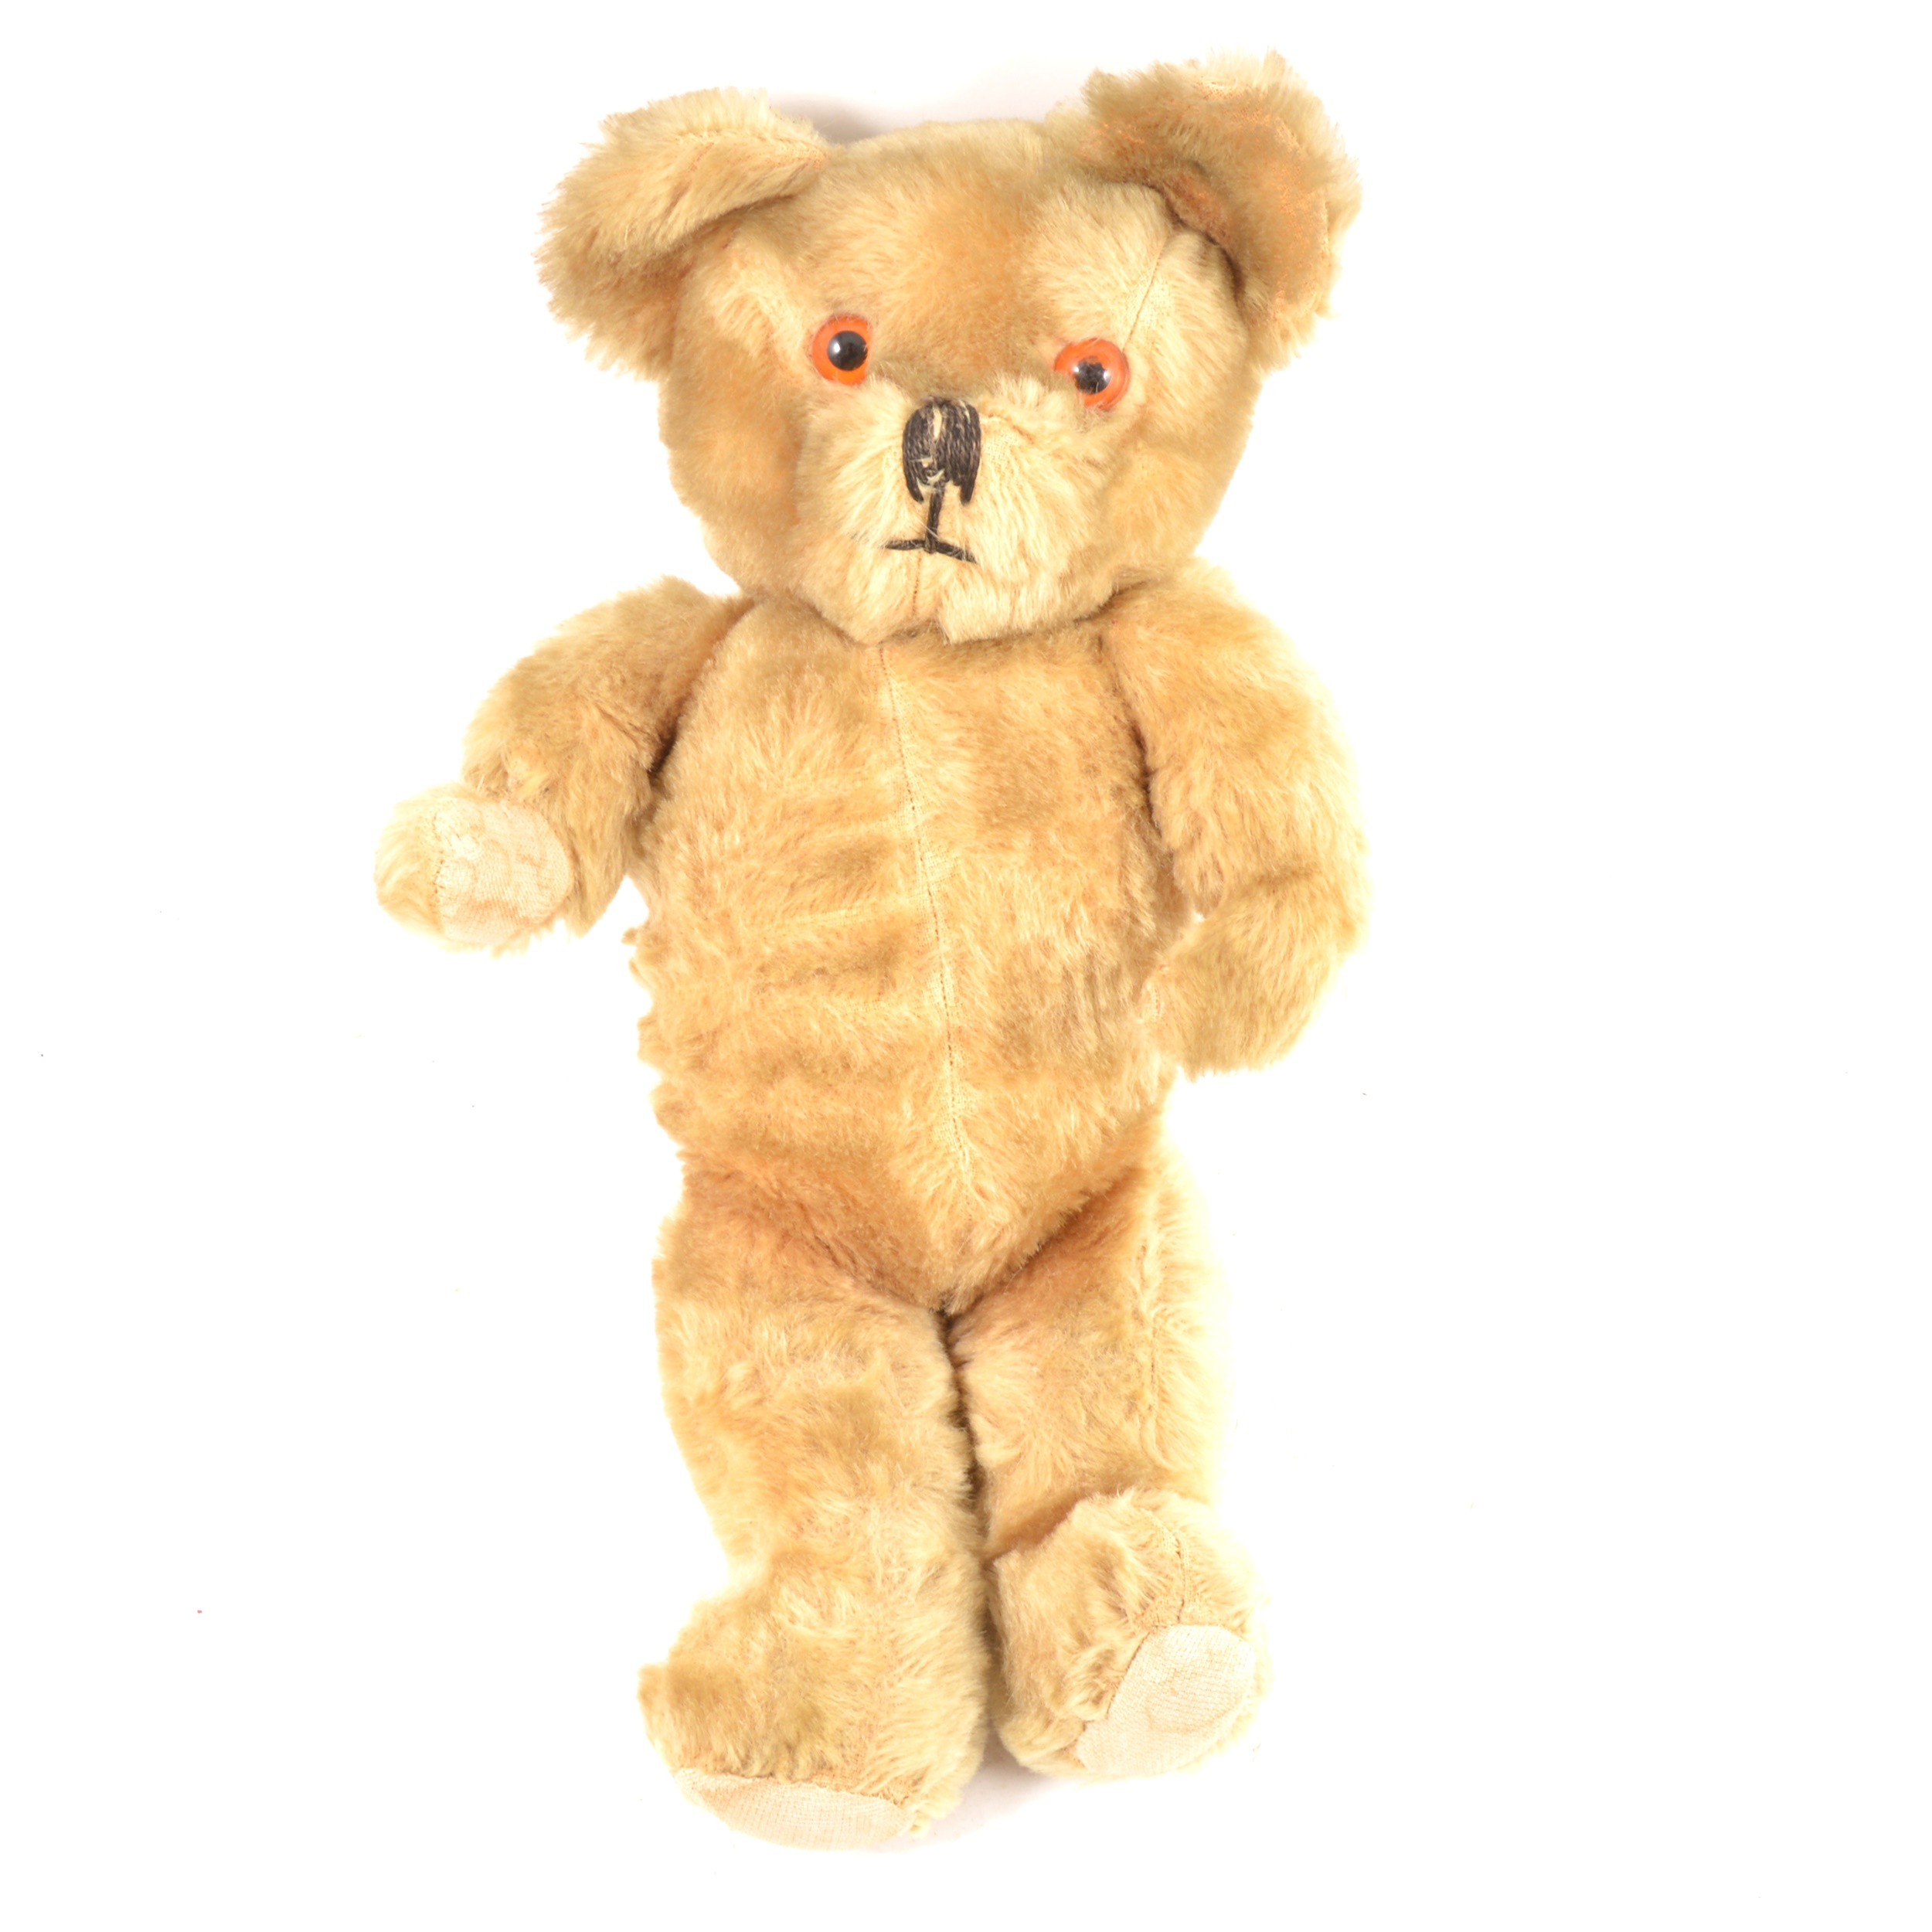 A Le-Fray ltd musical teddy bear.